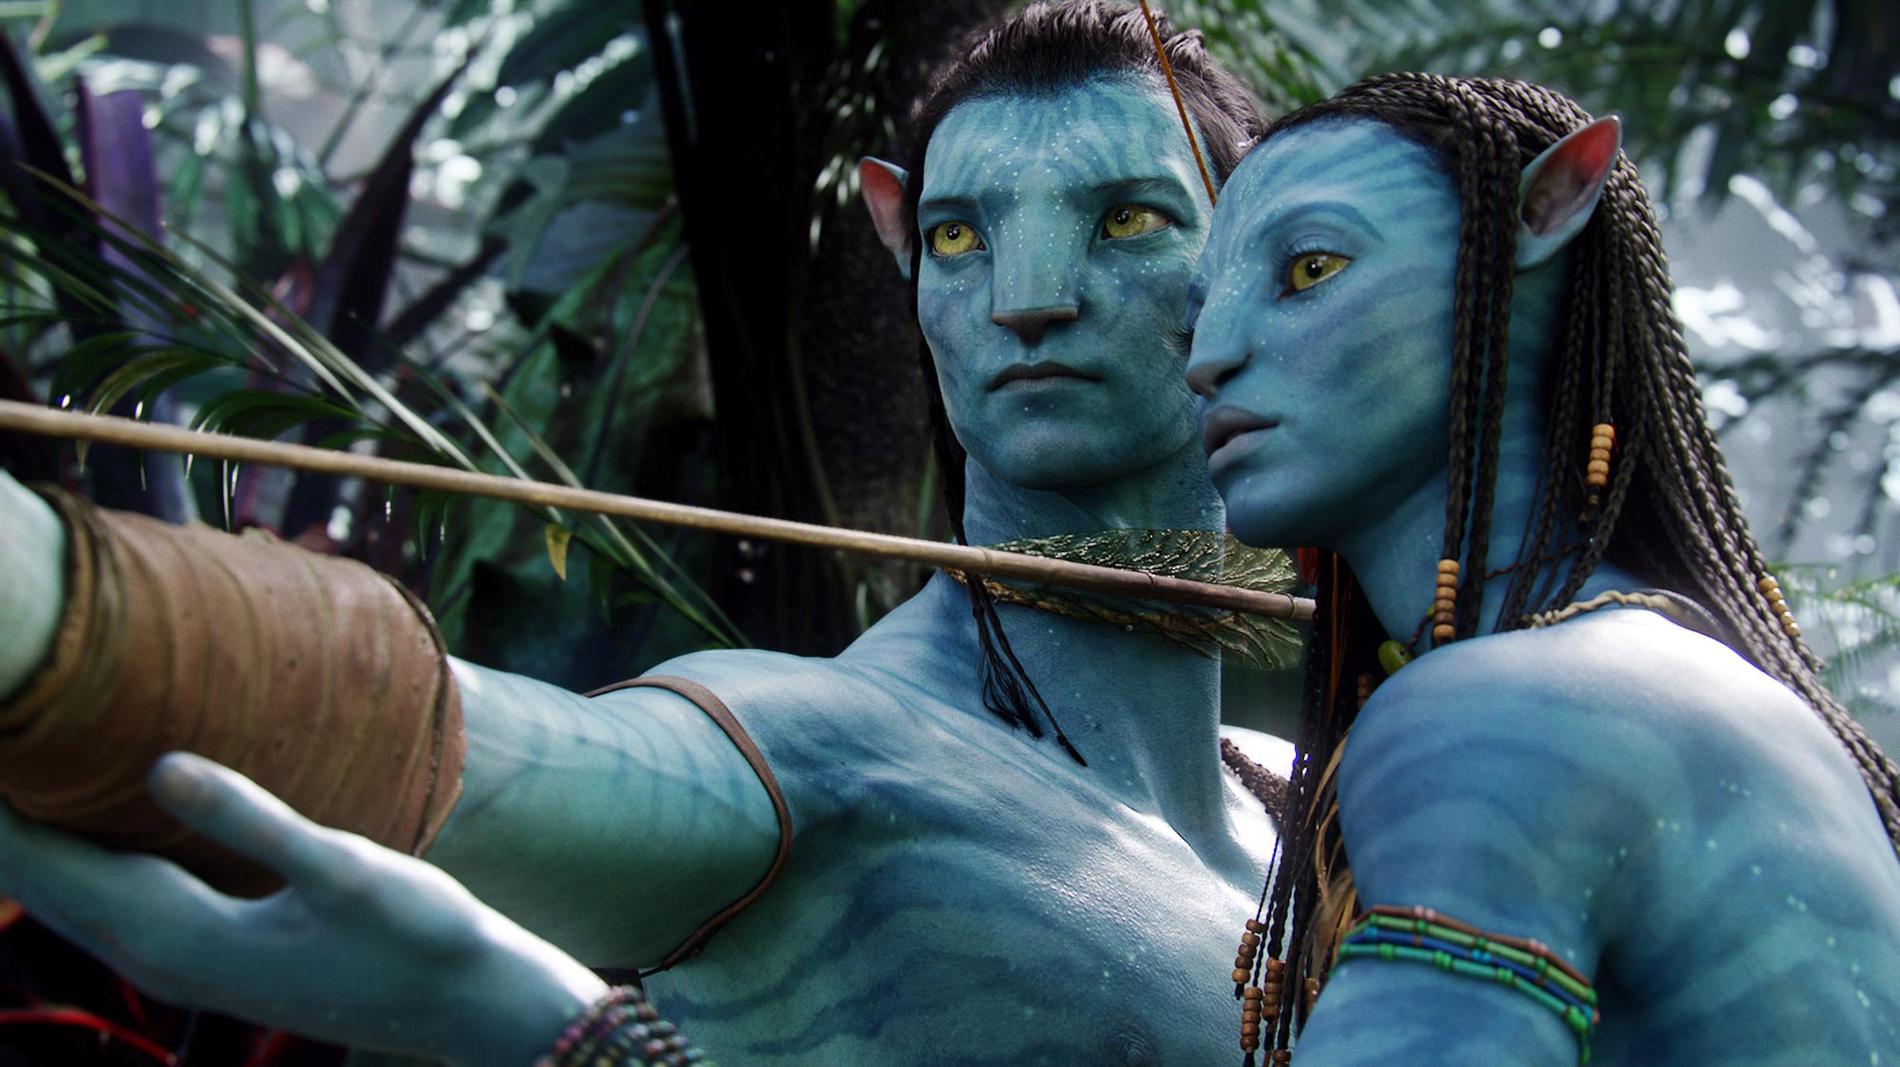 Snart tar Jake, Neytiri och de andra karaktärerna i ”Avatar” klivet in i verkligheten här på jorden.